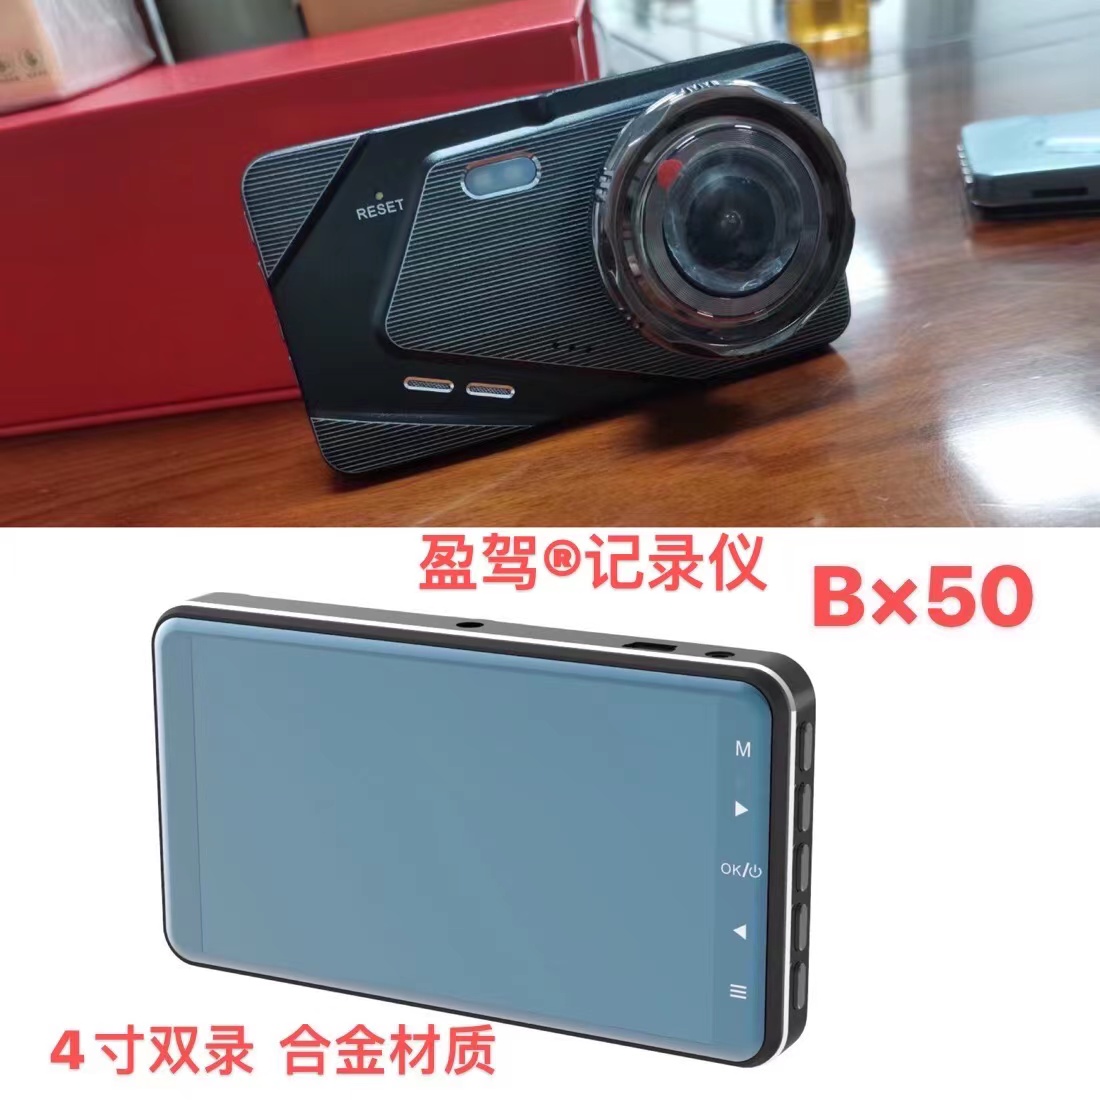 વ્હીકલ કેમેરા --YJ બ્રાન્ડ -- નવી પ્રોડક્ટ -- BX50 રજૂ કરવામાં આવી છે